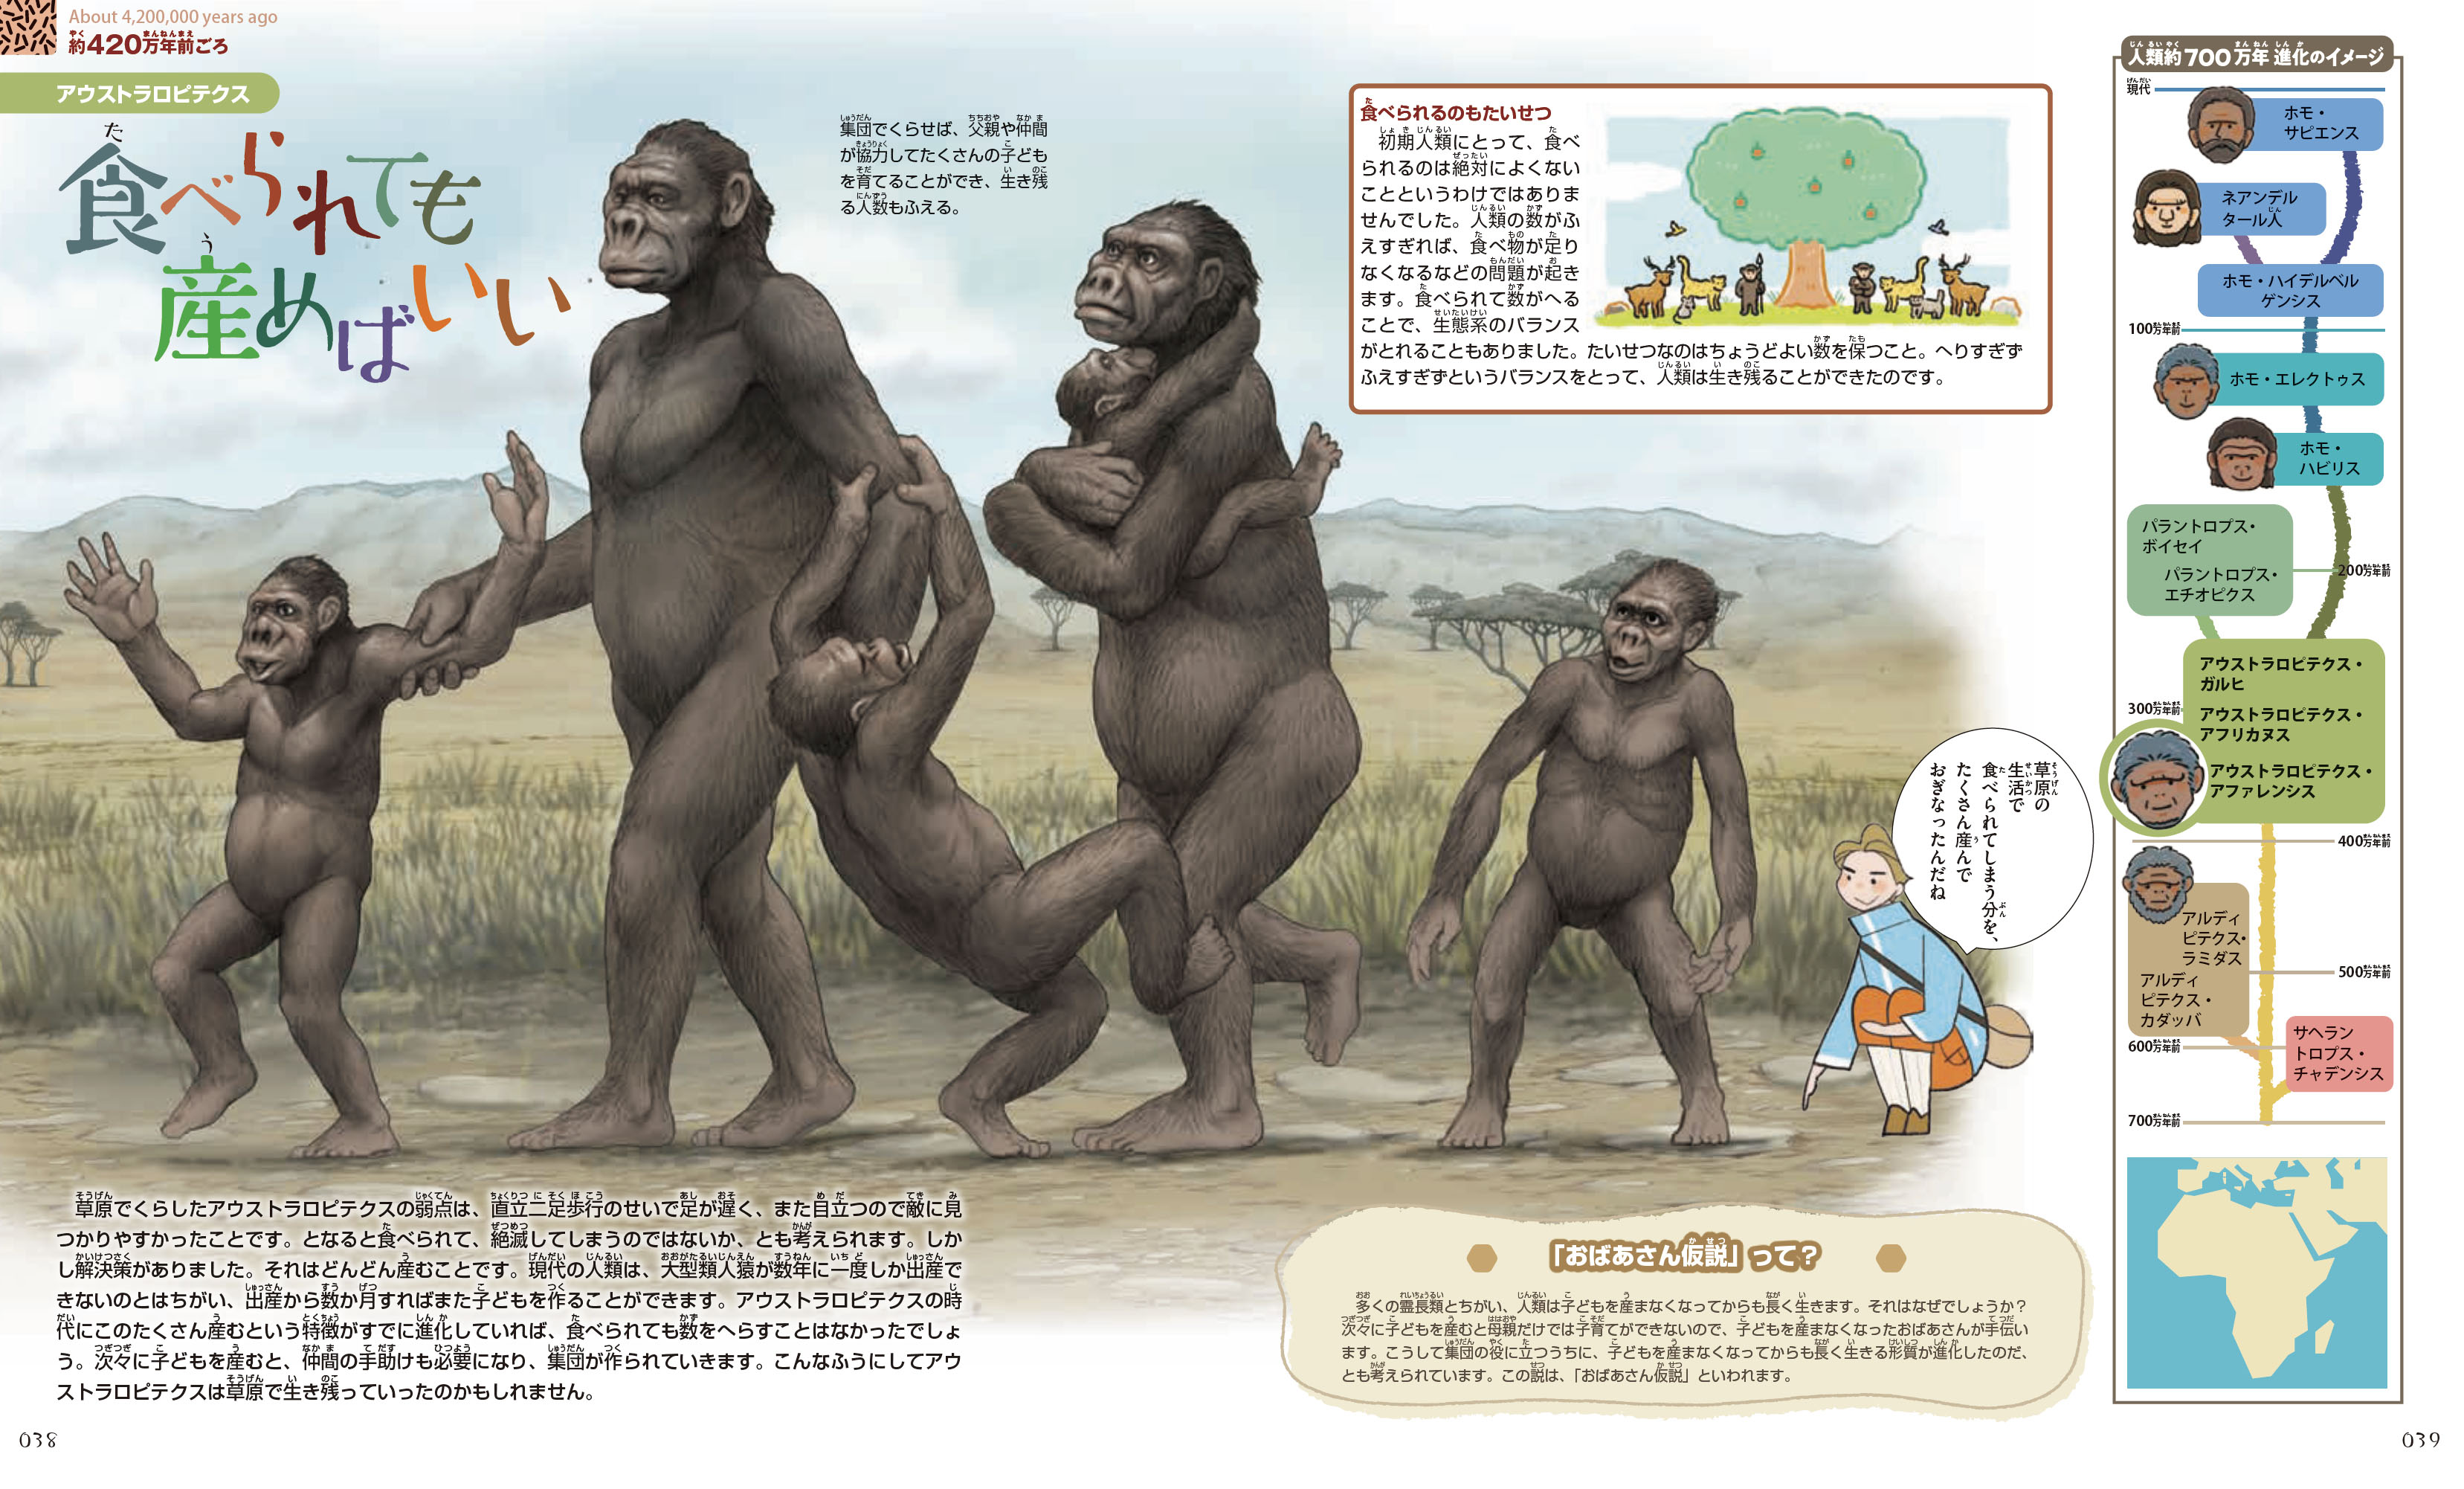 『人類の進化大百科』のなかのみひらき。アウストラロピテクスの家族が歩いている絵